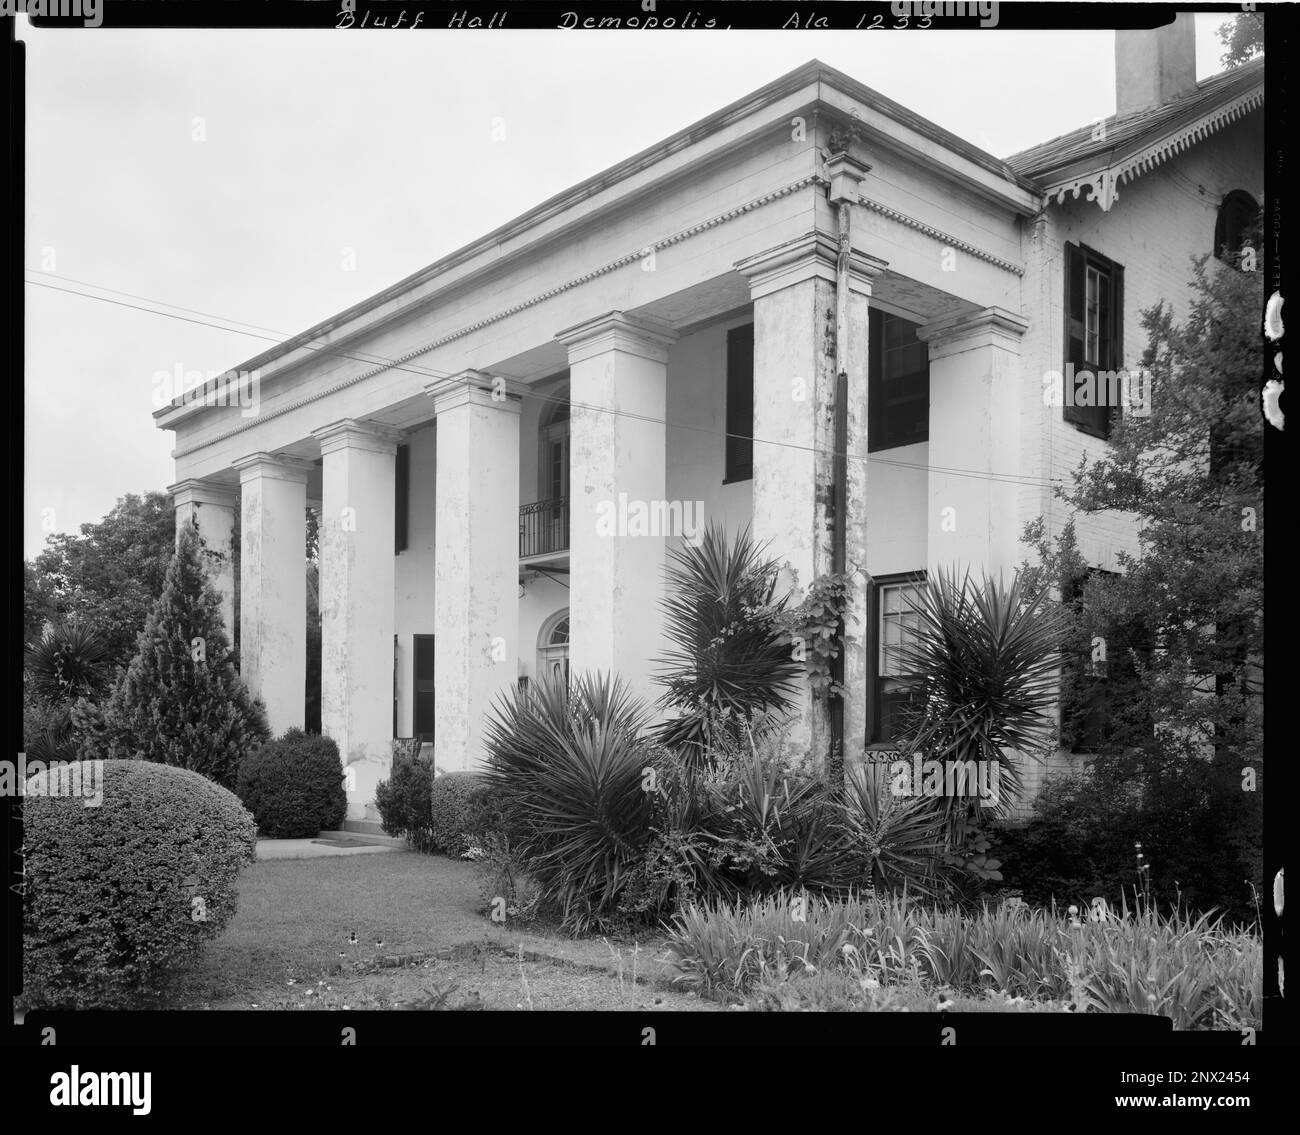 Bluff Hall, Demopolis, comté de Marengo, Alabama. Carnegie Etude de l'architecture du Sud. États-Unis, Alabama, comté de Marengo, Demopolis, Columns, Maisons. Banque D'Images